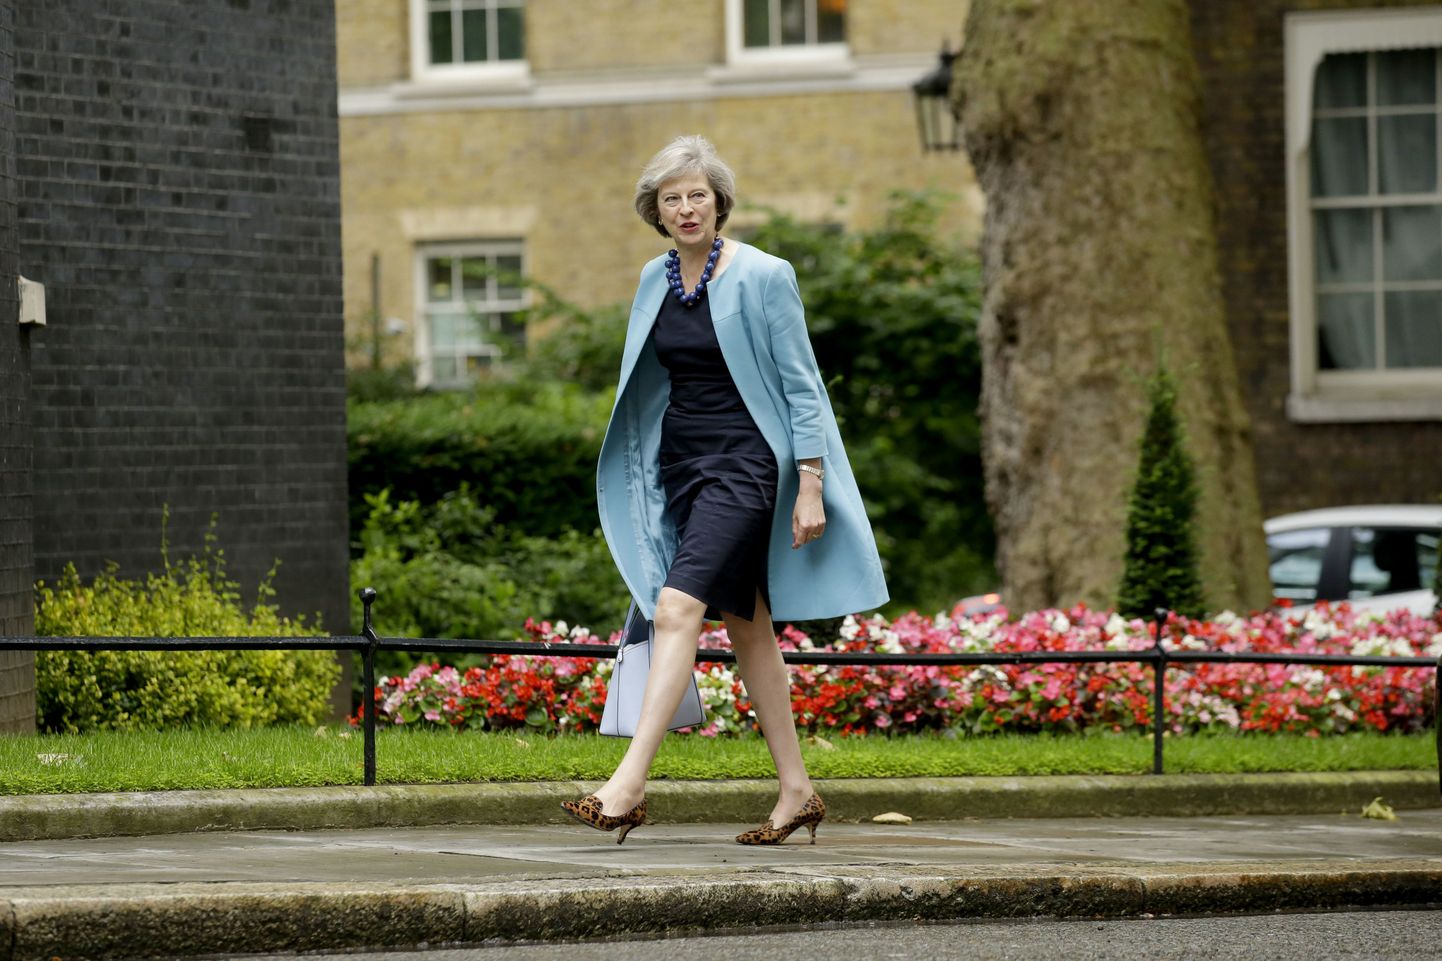 Briti siseminister Theresa May on küsitluse kohaselt rahva seas kõige populaarsem kandidaat.